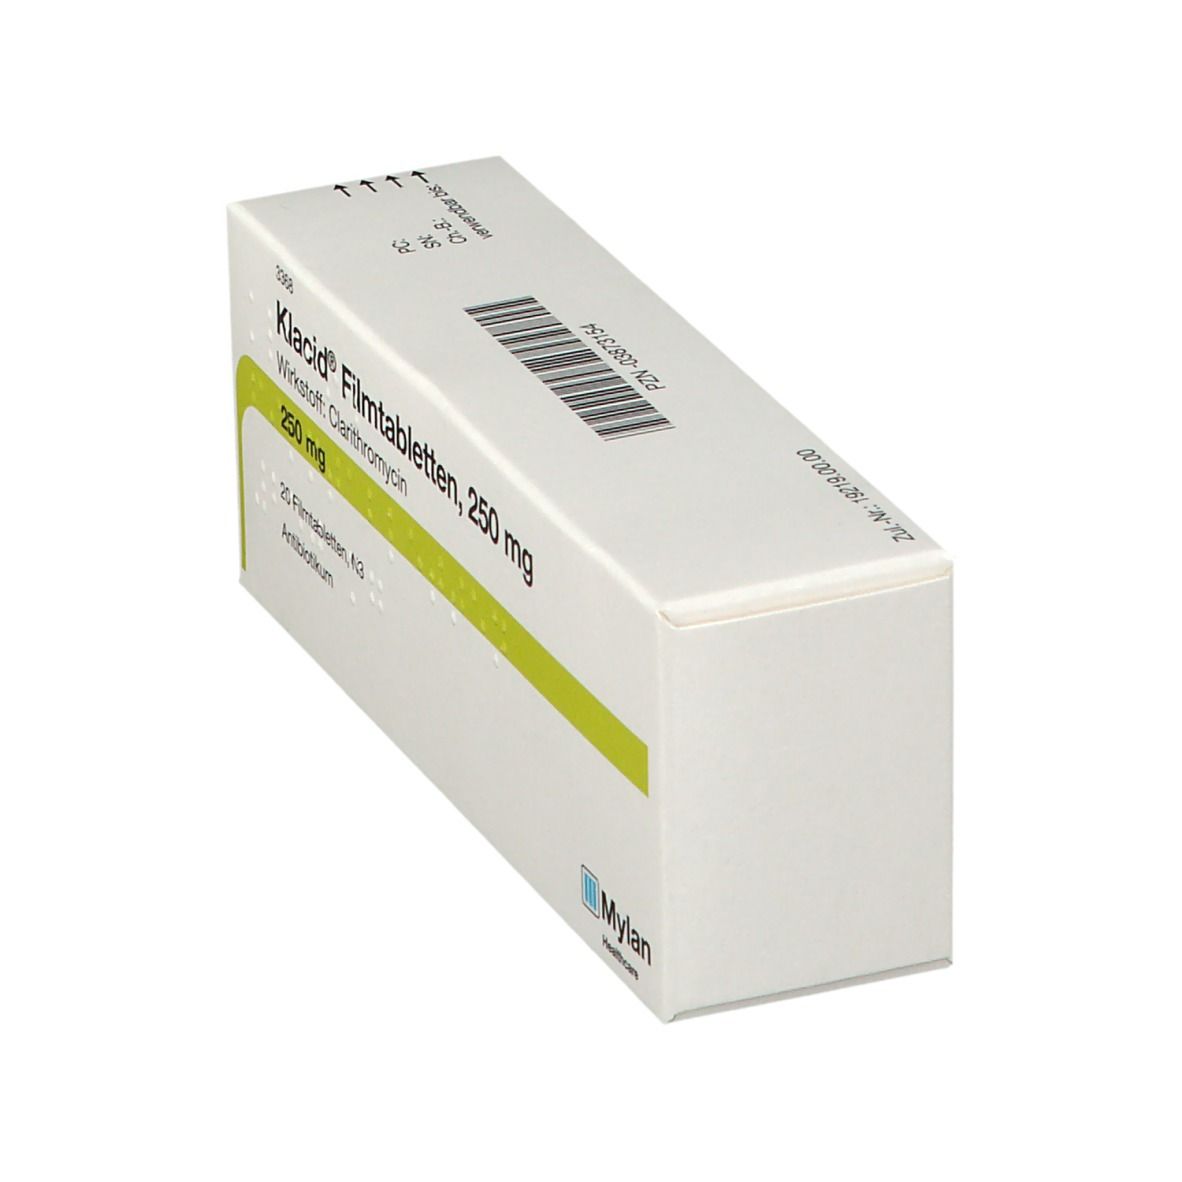 Klacid® Filmtabletten 250 mg